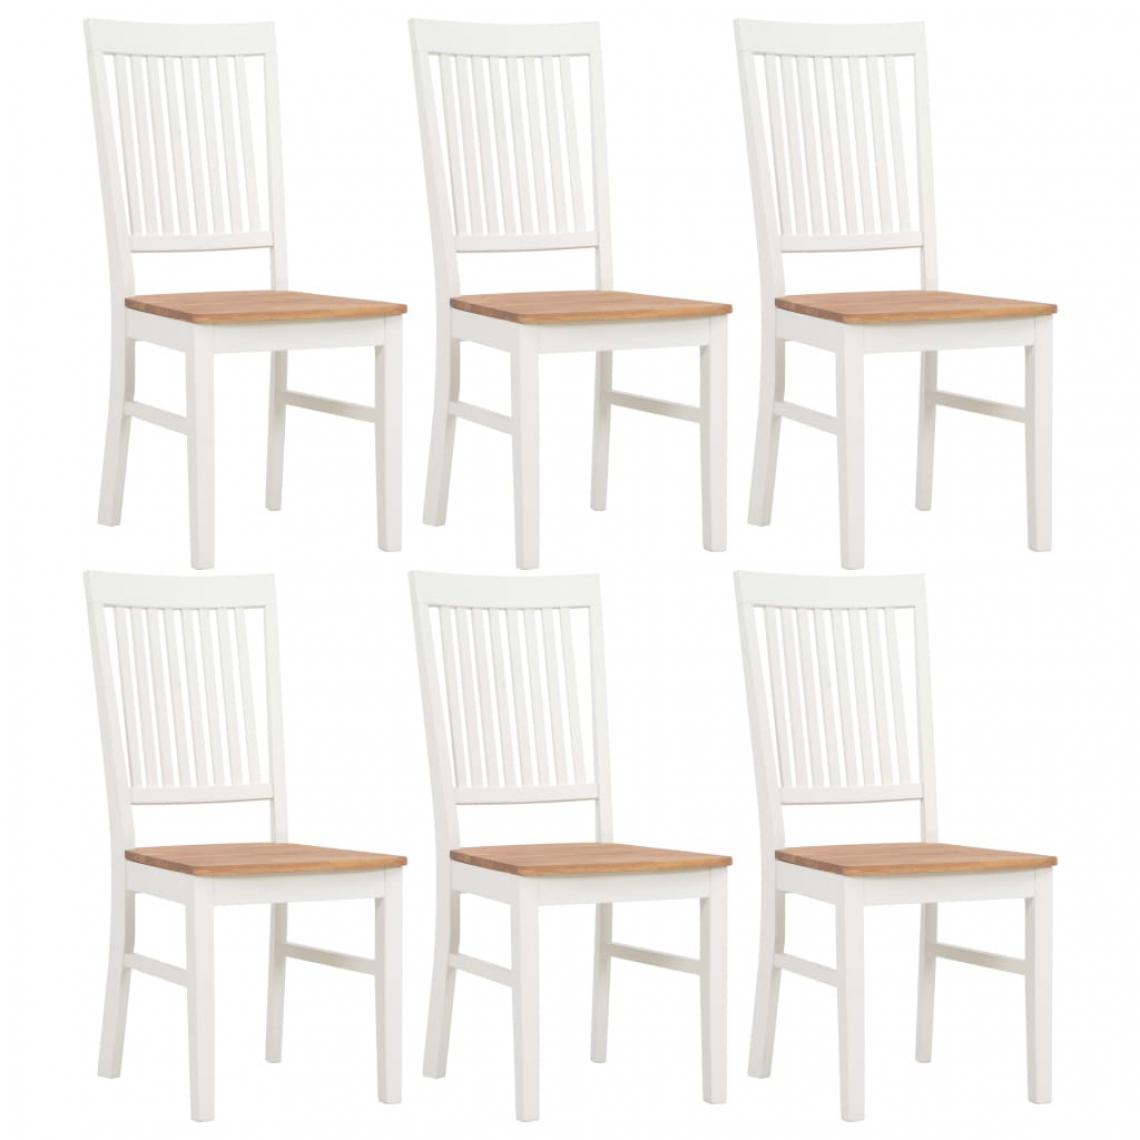 Icaverne - Magnifique Fauteuils et chaises famille Managua Chaises de salle à manger 6 pcs Blanc Bois de chêne solide - Chaises